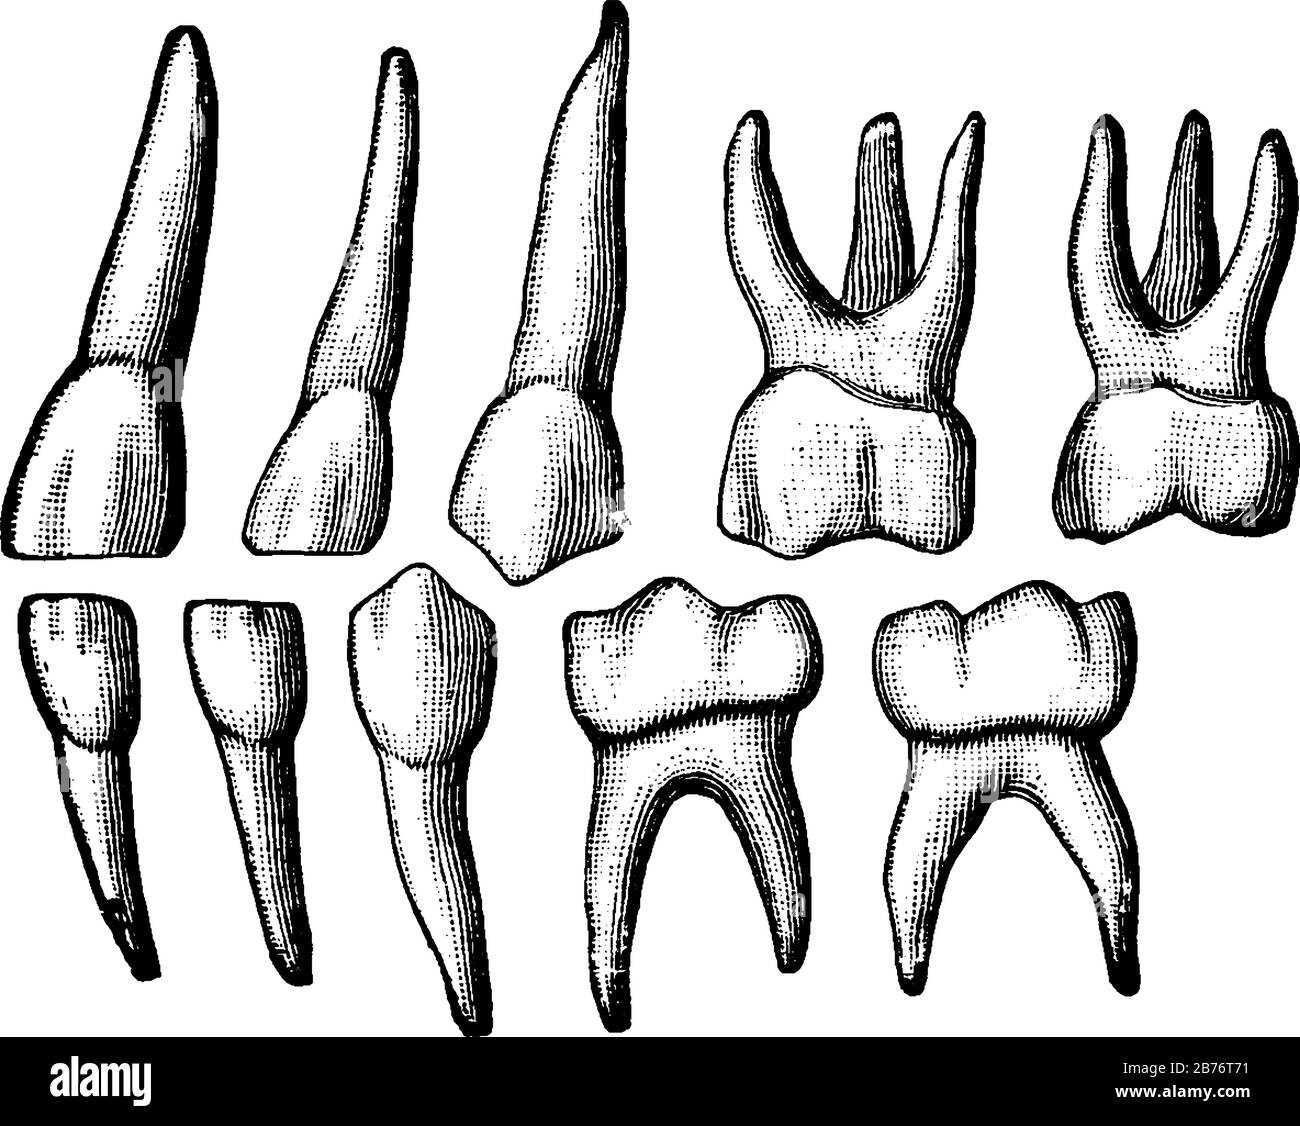 Les dents temporaires, également appelées dents primaires ou dents de bébé, sont le premier ensemble de dents dans le développement de la croissance des humains, dessin vintage de ligne ou Illustration de Vecteur